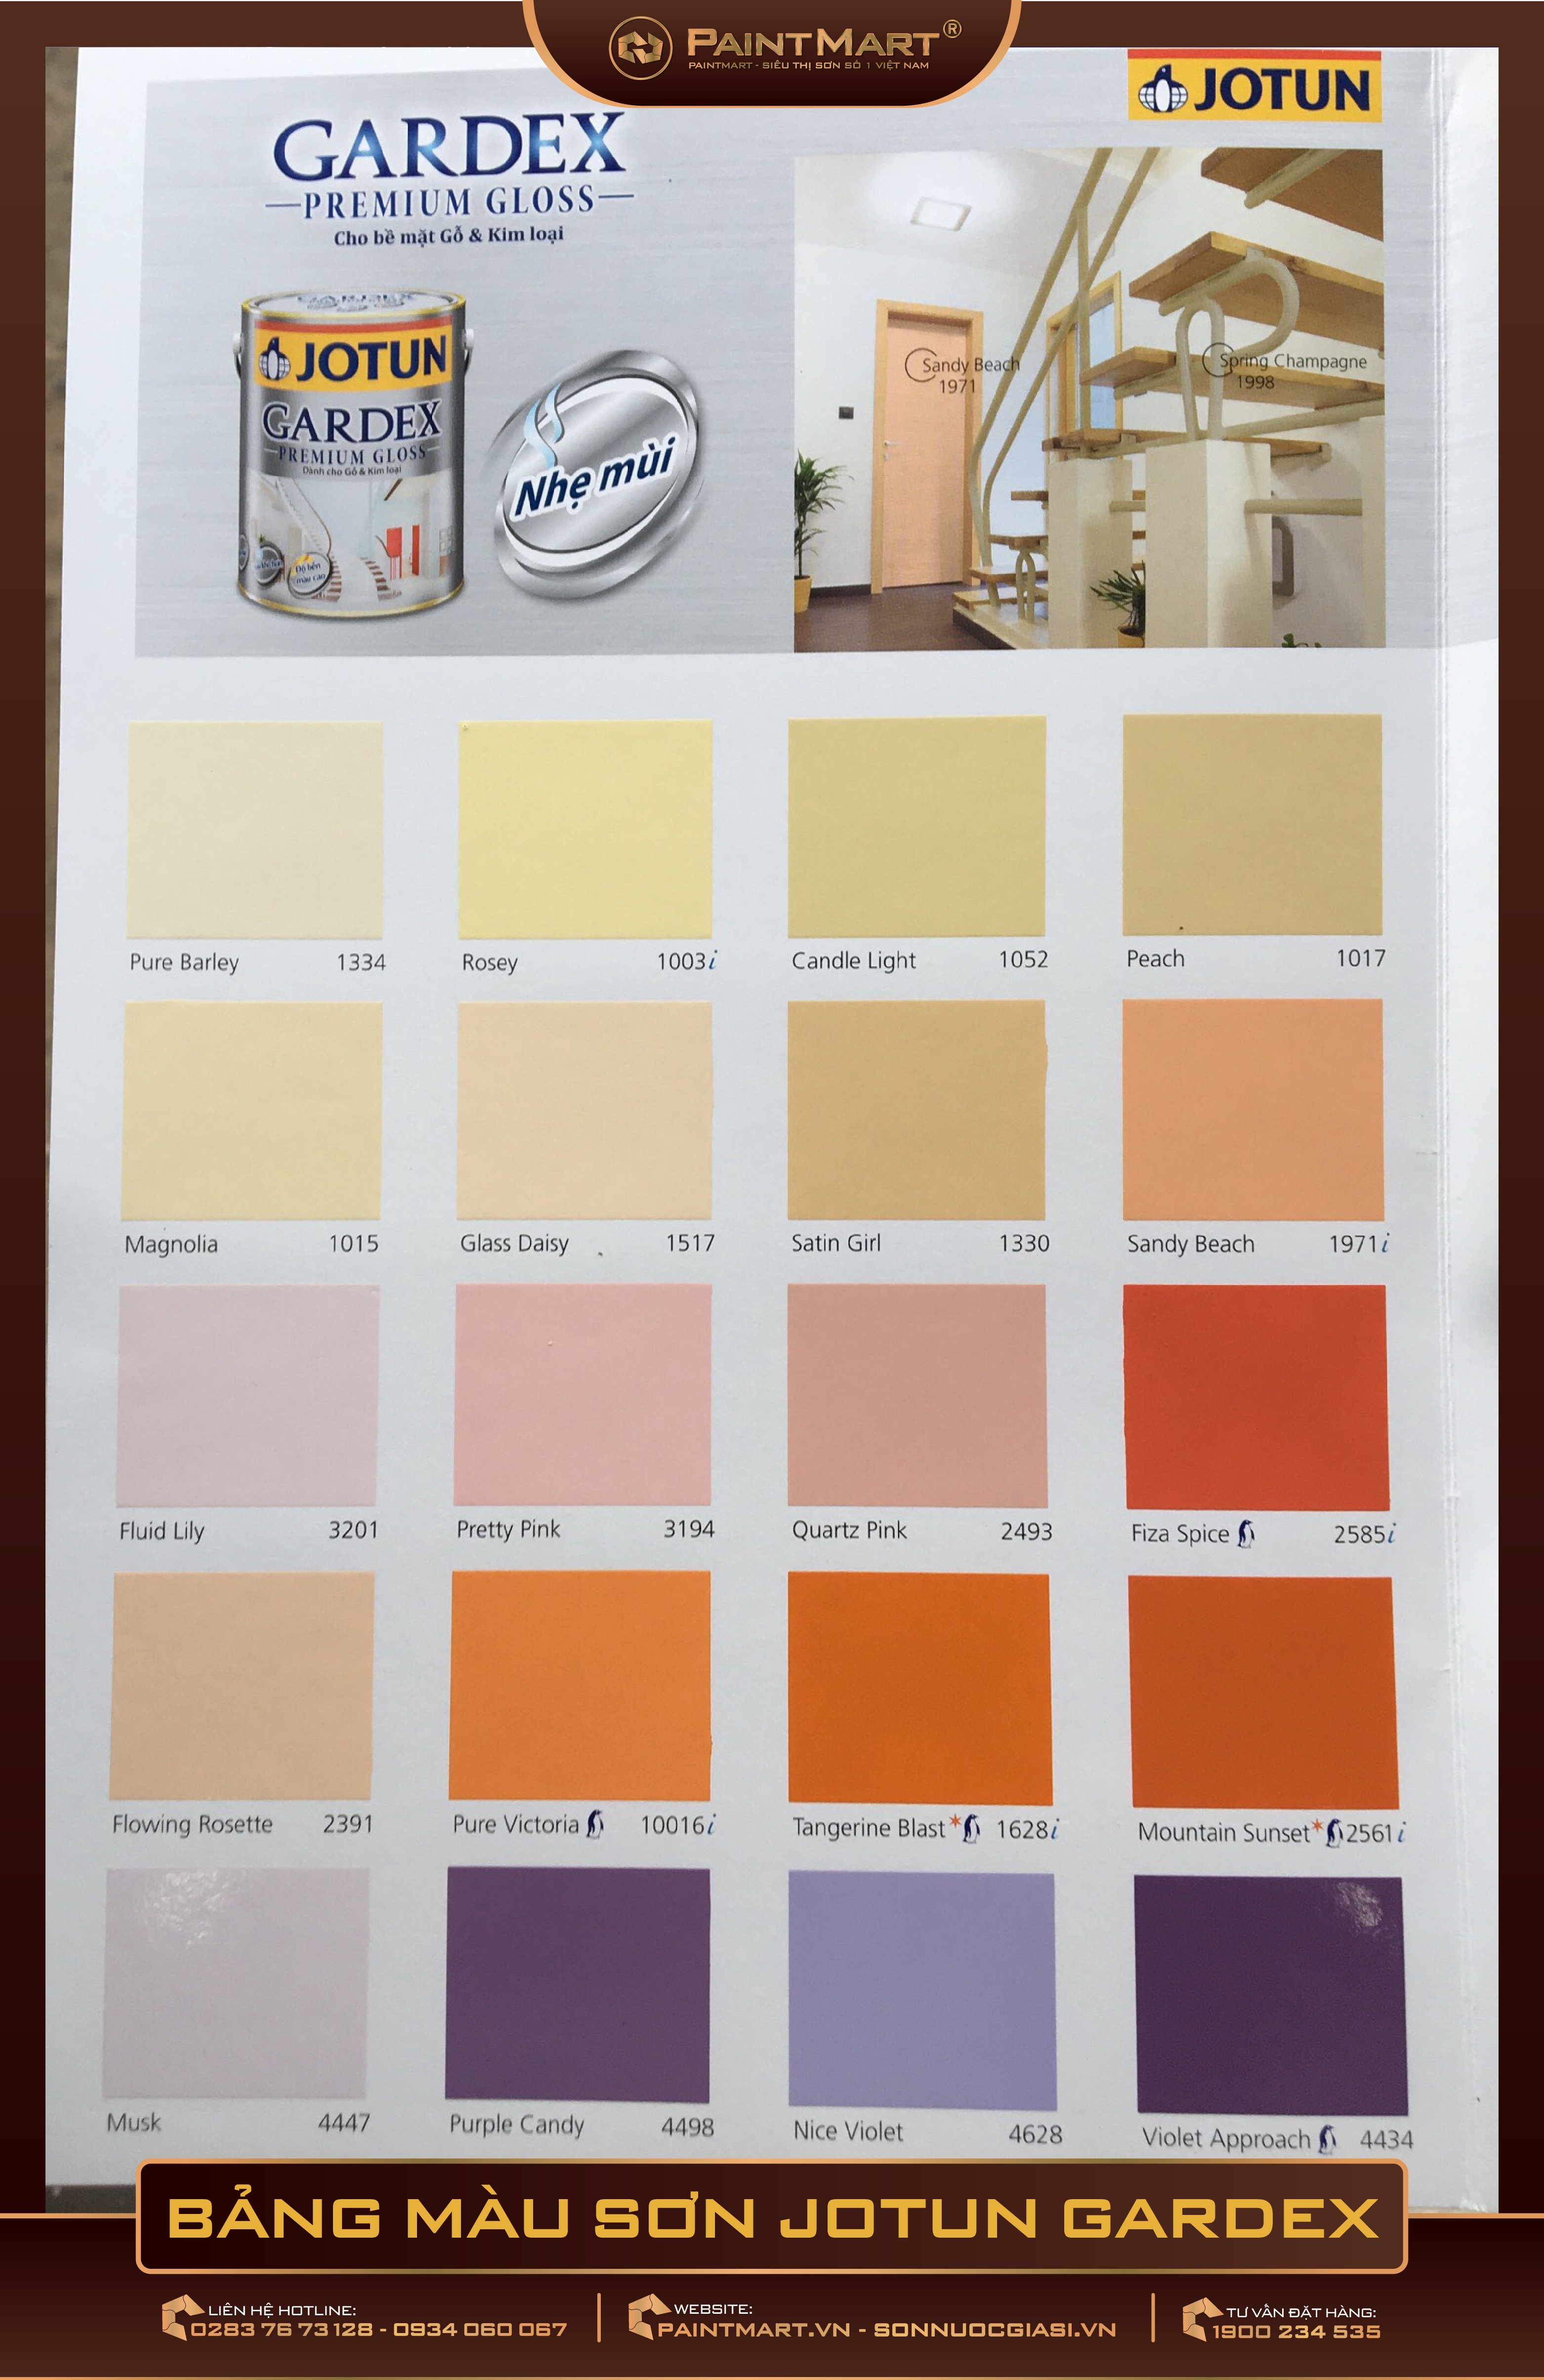 Bạn sẽ không thể bỏ qua bảng màu sơn dầu Jotun mới nhất năm 2024, bởi nó mang đến sự tươi mới và độc đáo cho căn nhà của bạn. Với đầy đủ các loại màu sắc, bạn có thể dễ dàng tìm ra sự kết hợp màu sắc phù hợp nhất với căn nhà của bạn.